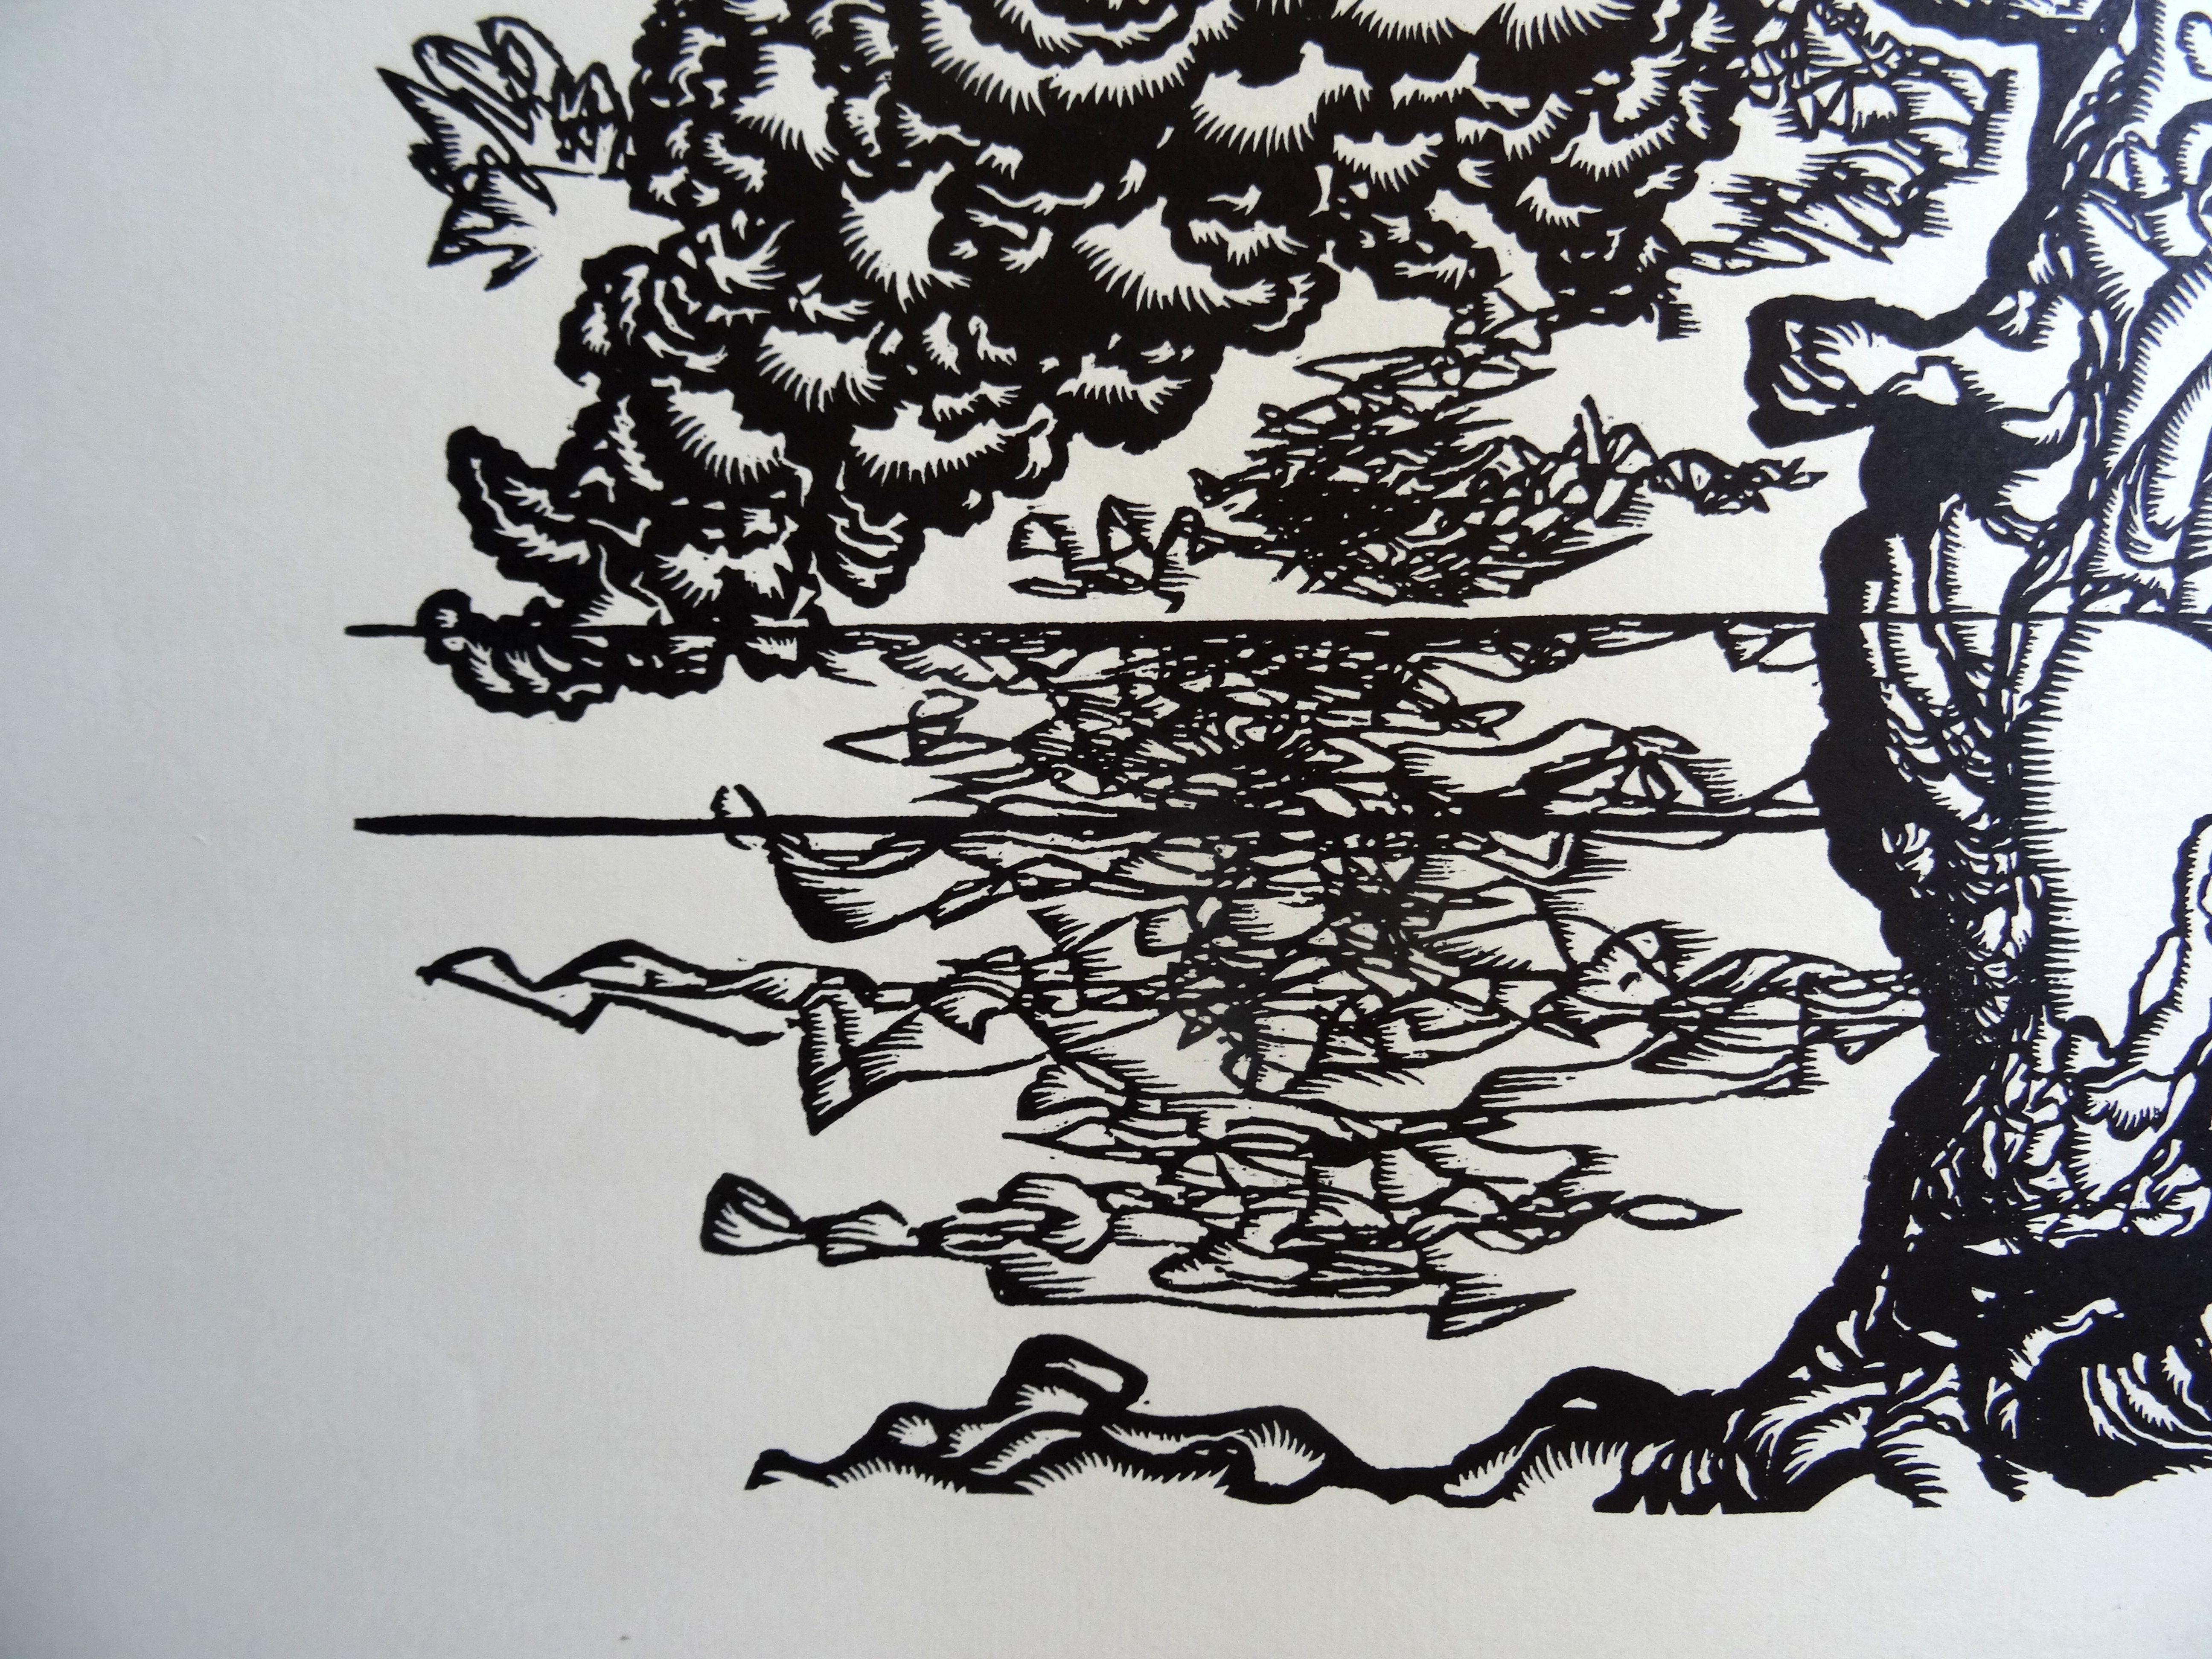 Kiefernholzbaum. 1978, Papier, Linolschnitt, Druckgröße 50x40 cm; Papiergröße 70x55 cm (Grau), Abstract Print, von Dainis Rozkalns